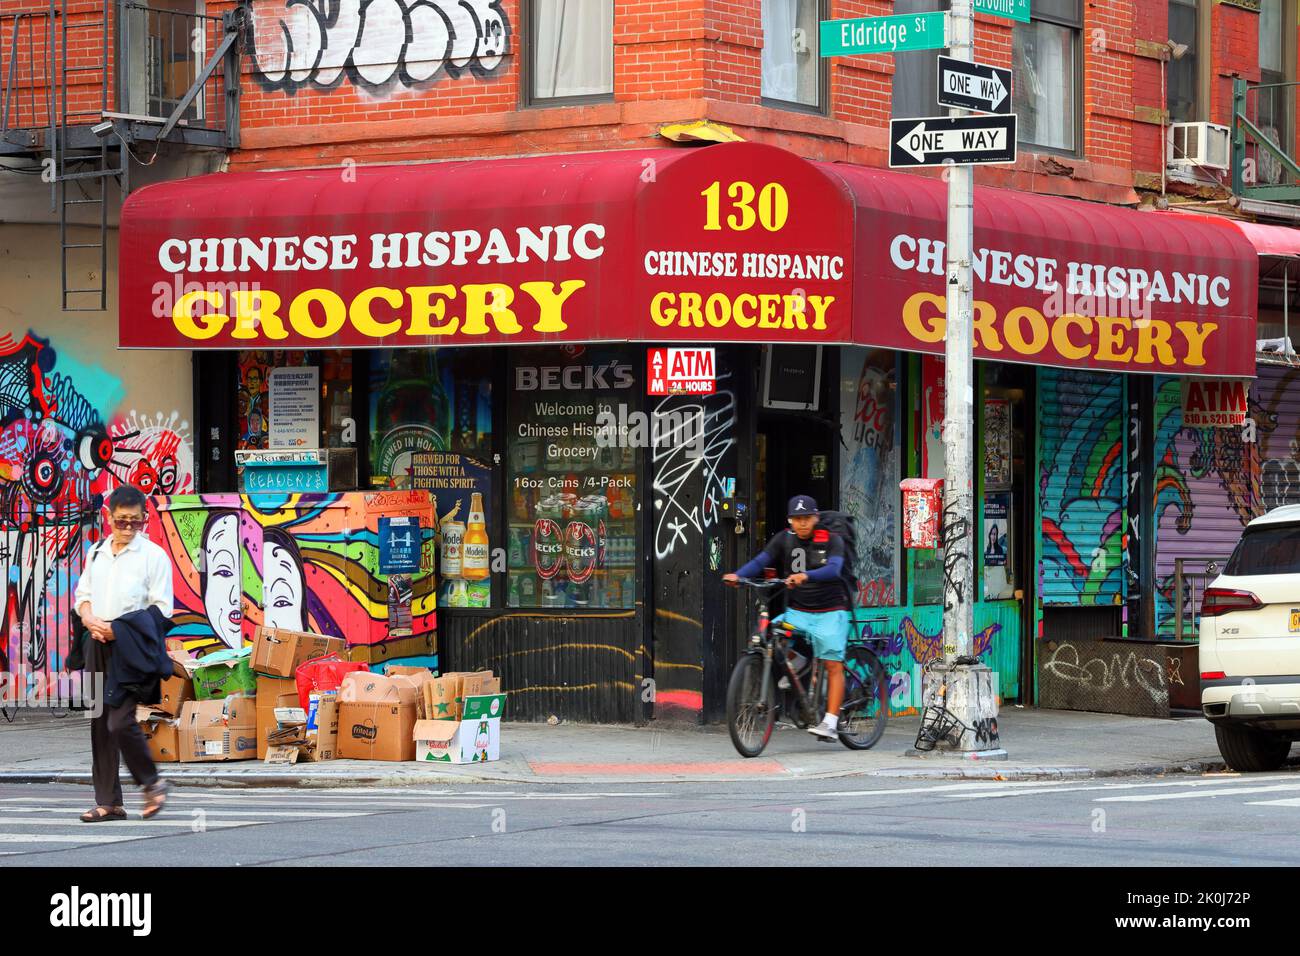 Tienda de comestibles hispanos chinos, 130 Eldridge St, Nueva York, Nueva York, Nueva York, Nueva York, foto de una bodega en el Lower East Side/Chinatown de Manhattan Foto de stock